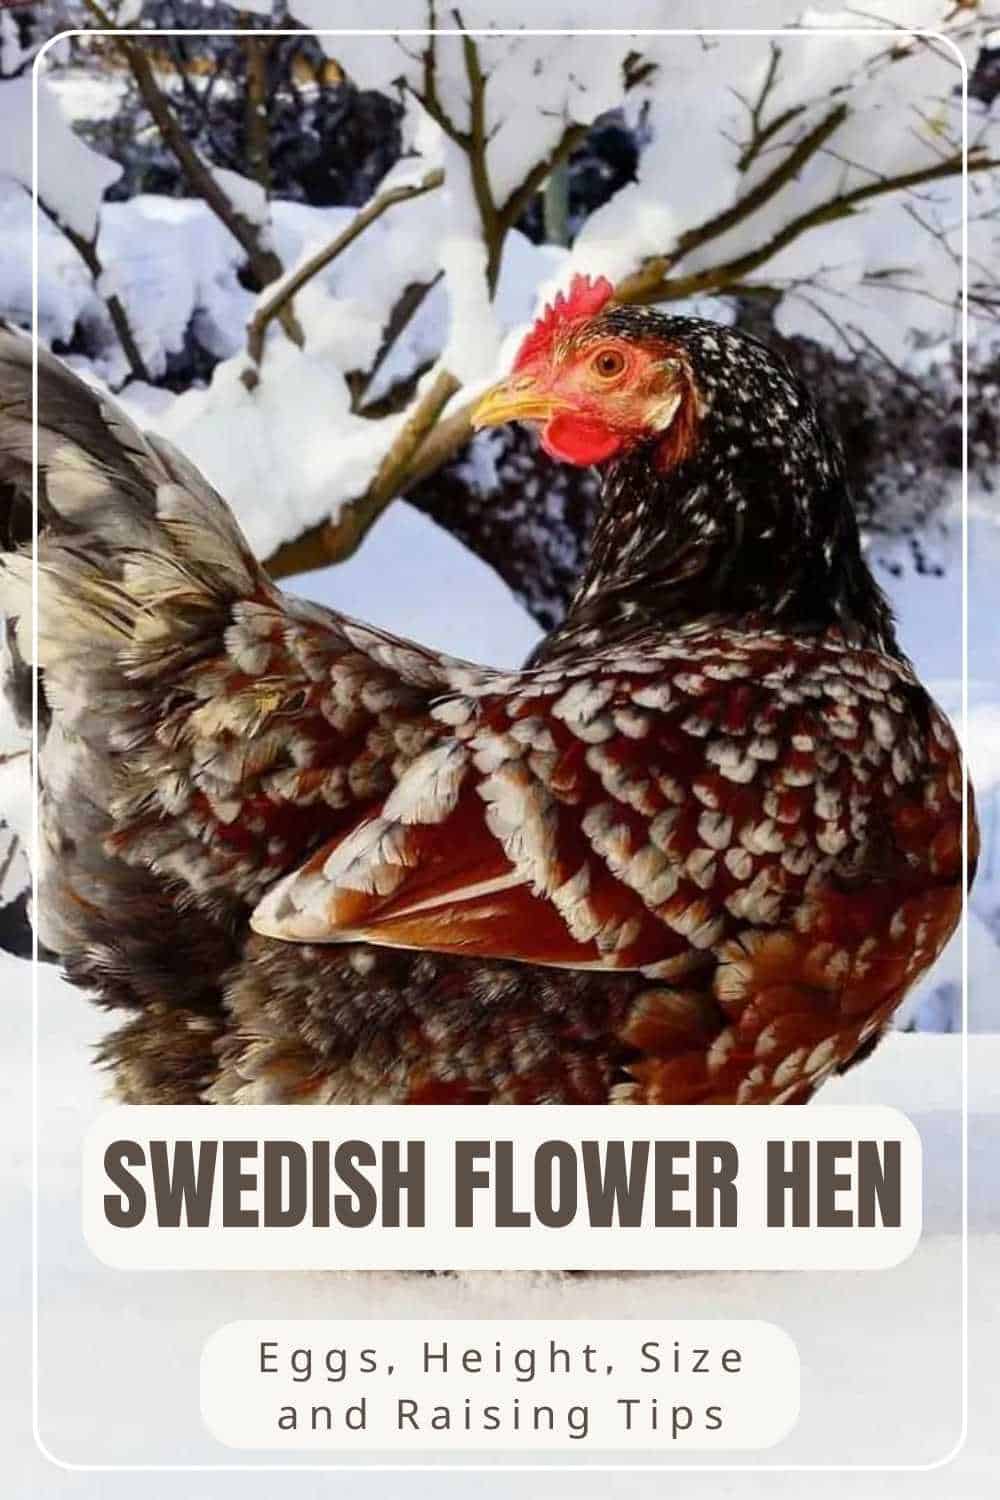 Swedish Flower Hen chicken breed